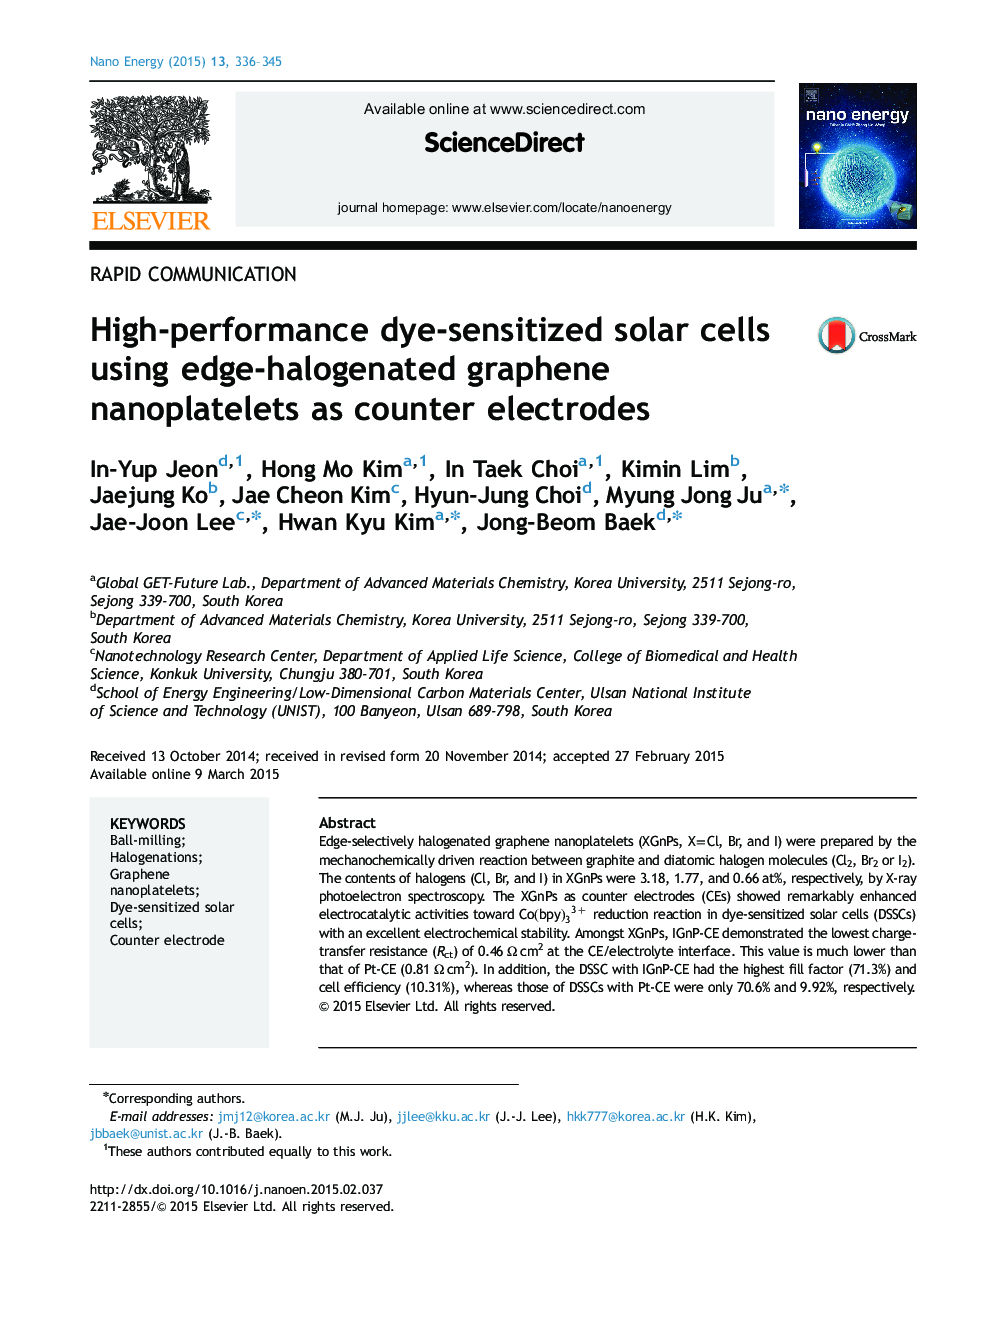 سلول های خورشیدی حساسیت شده با رنگ بالا با استفاده از نانولوله های گرافن لبه های هالوژنه به عنوان الکترودهای ضد 